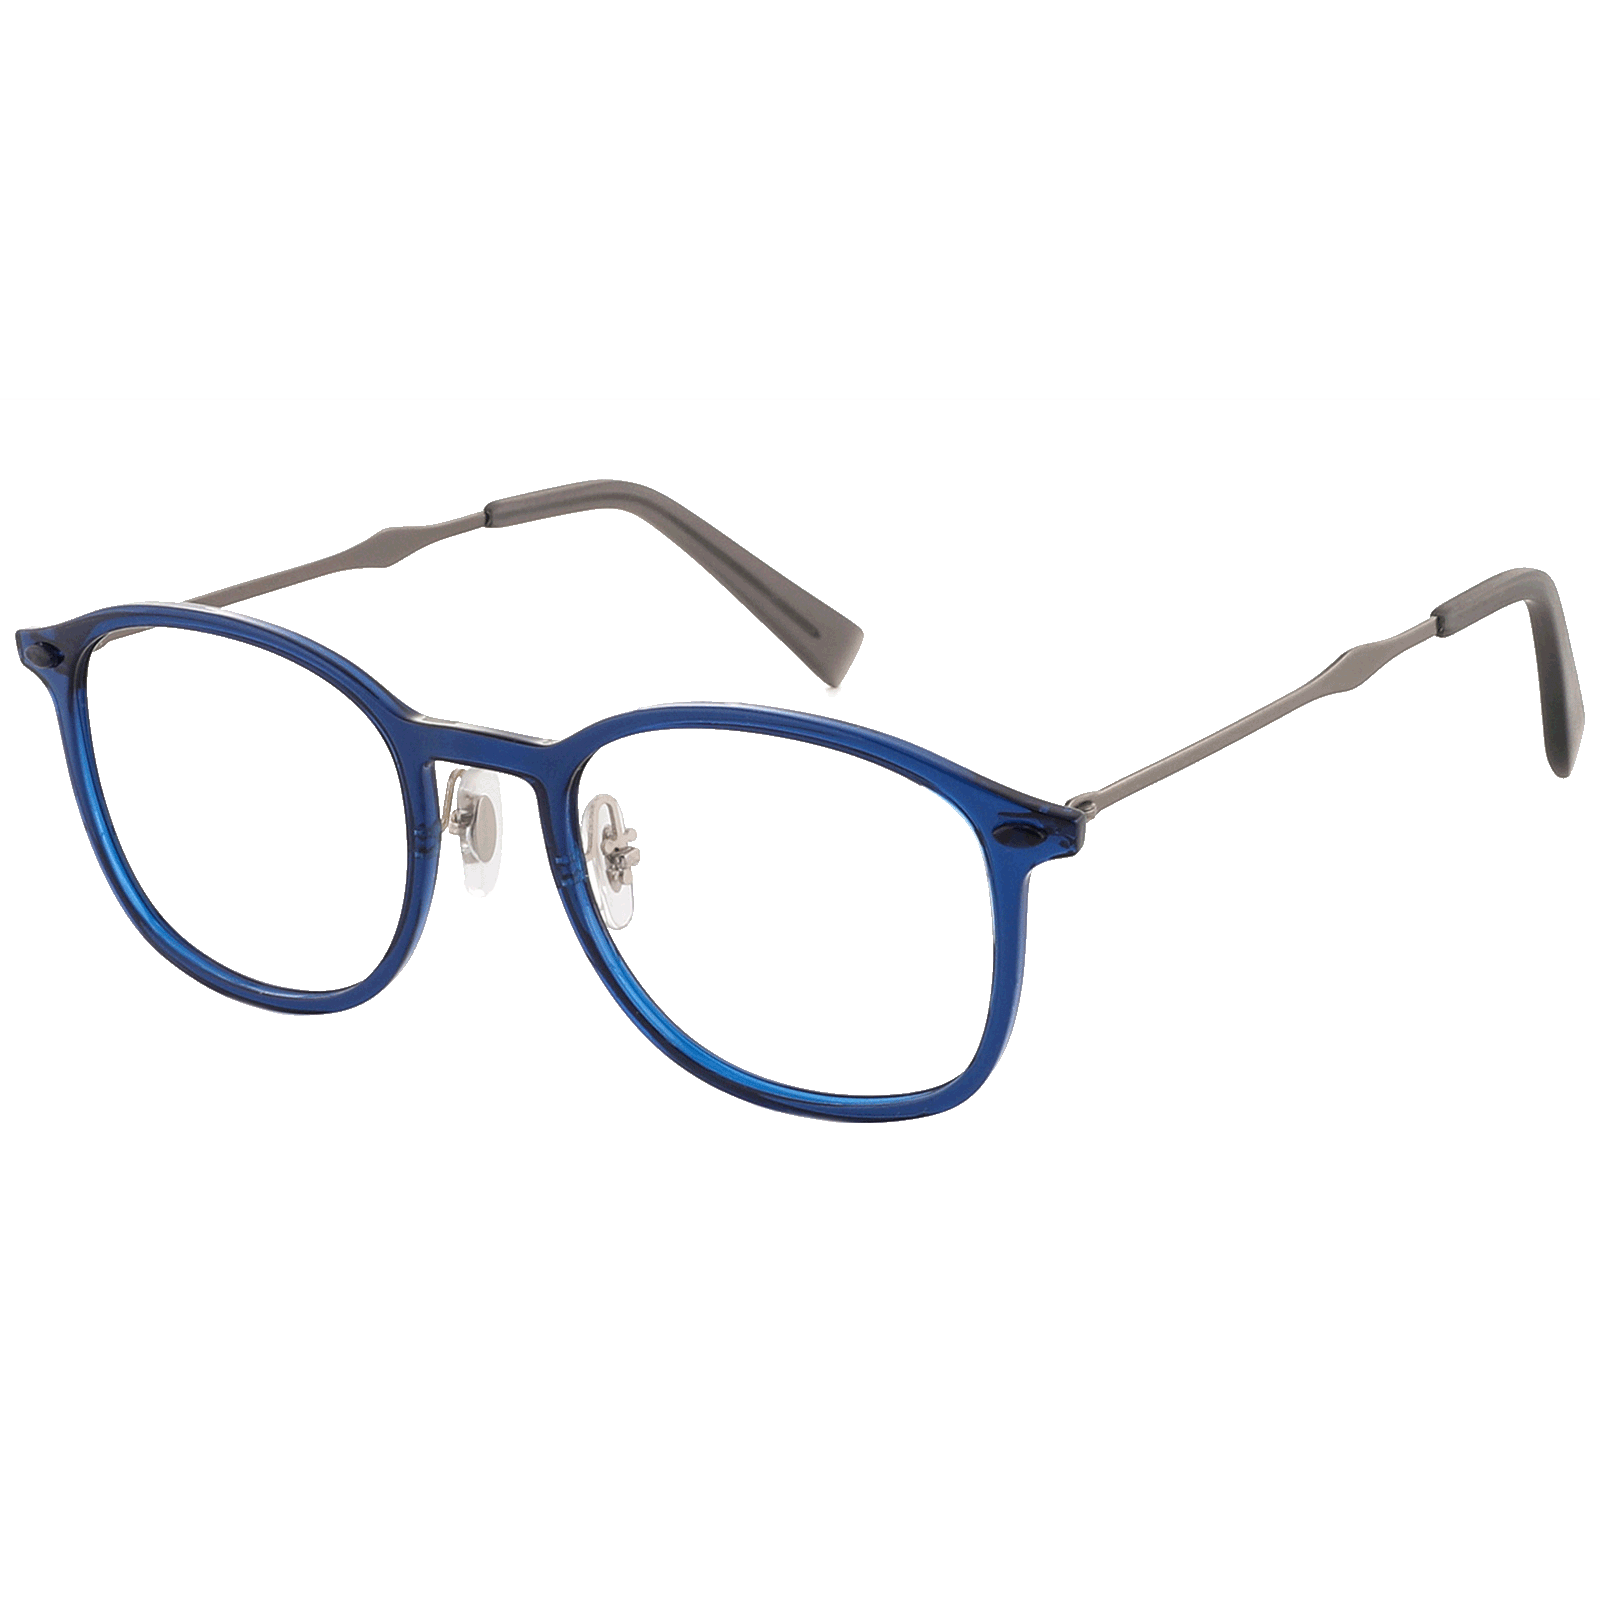 Church - Oval Blue Reading Glasses for Men & Women